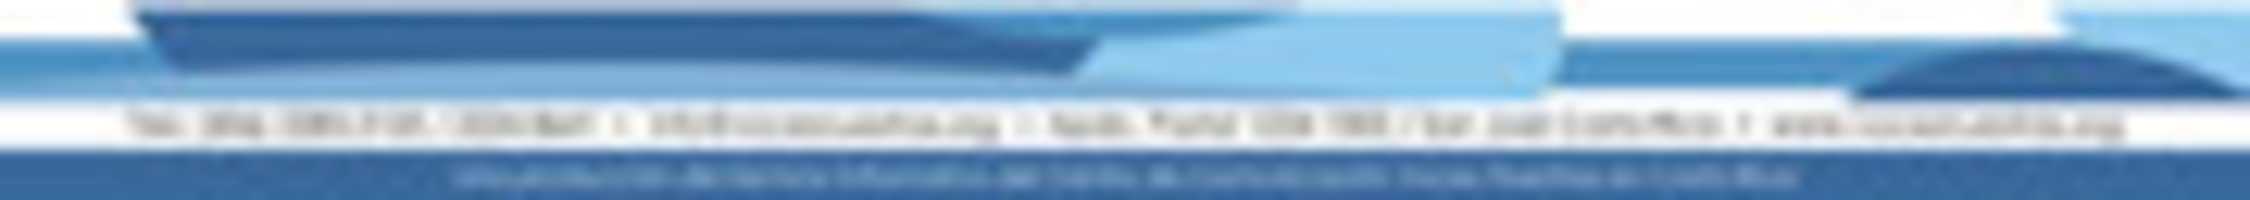 জিআইএমপি অনলাইন ইমেজ এডিটর দিয়ে এডিট করার জন্য বিনামূল্যে ডাউনলোড করুন imgs_boletin বিনামূল্যের ছবি বা ছবি